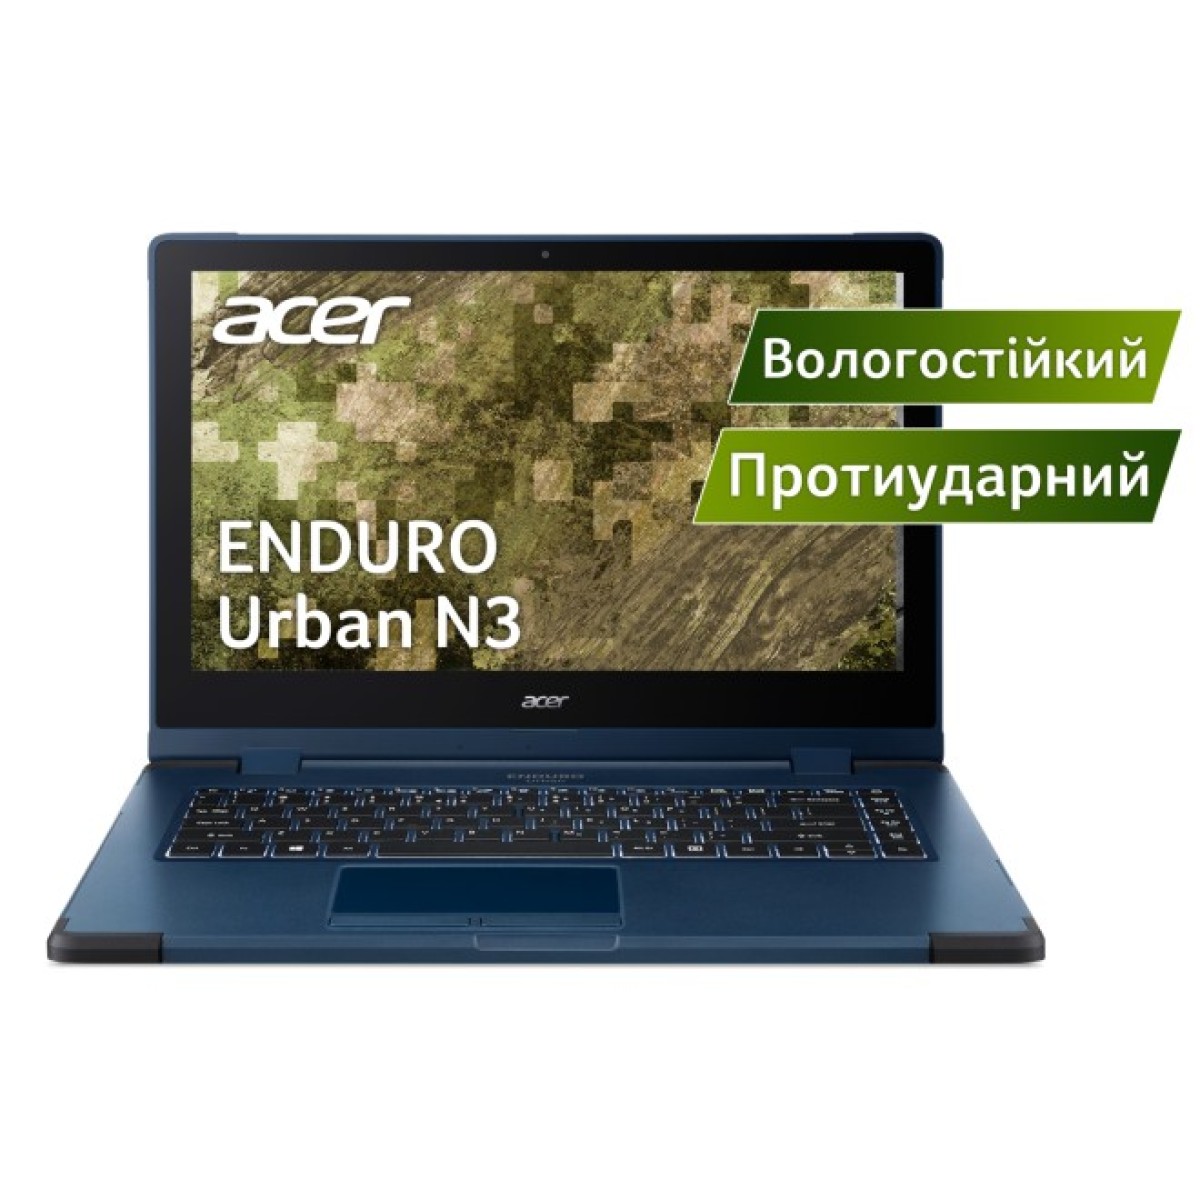 Ноутбук Acer Enduro Urban N3 314-51W-79SE (NR.R18EU.00G) 256_256.jpg